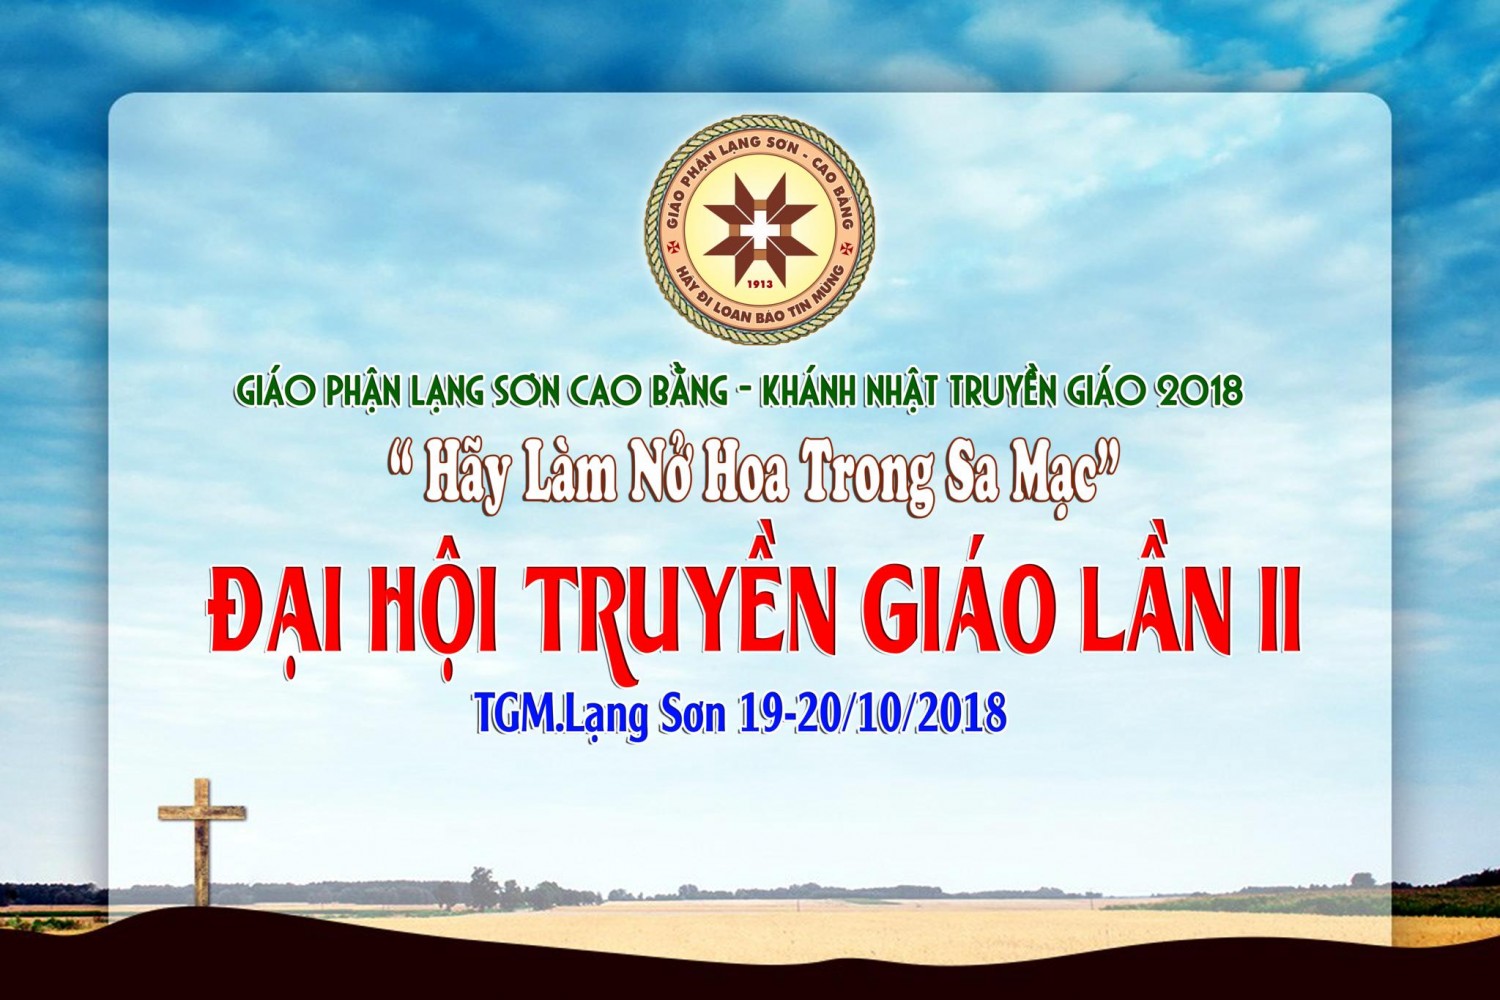 Khai mạc Đại Hội Truyền Giáo lần thứ II của Giáo phận Lạng Sơn Cao Bằng